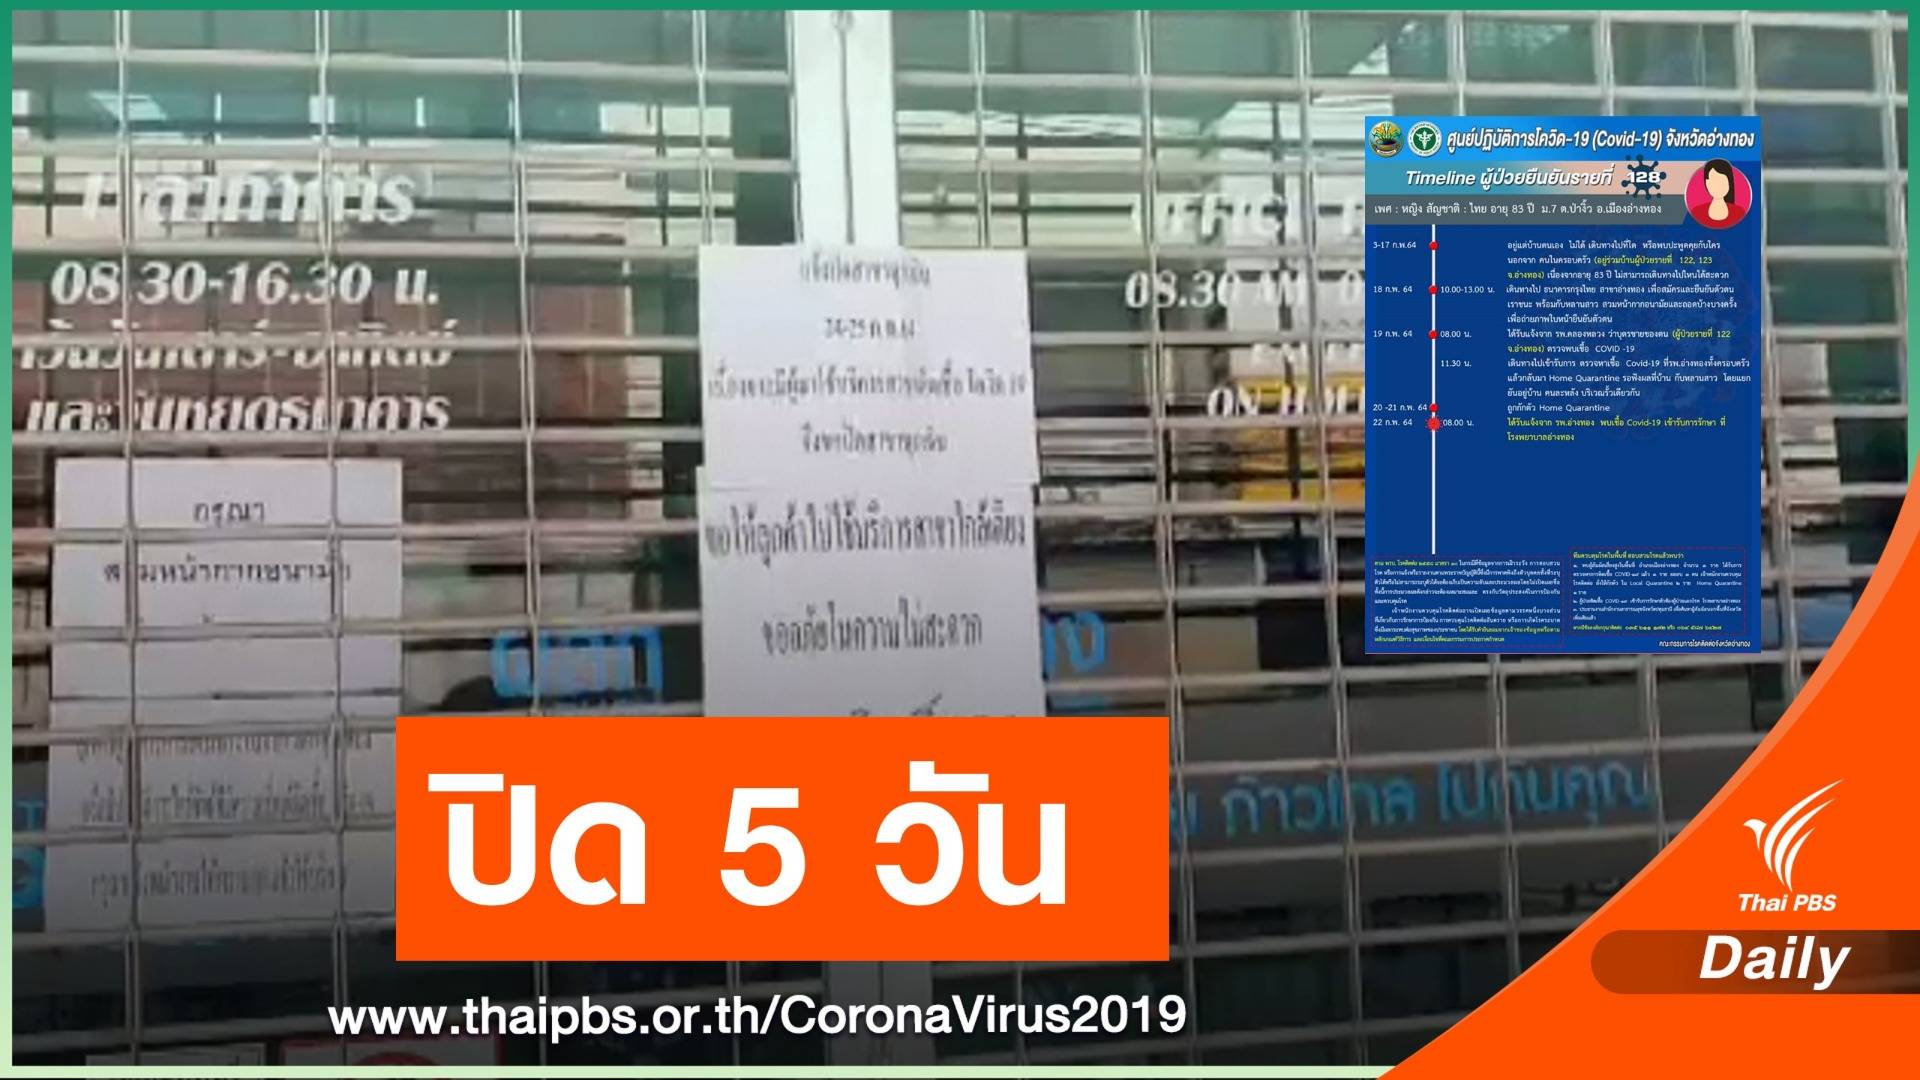 ปิดกรุงไทยอ่างทอง "ยาย 84 ปี" ติด COVID-19 มาใช้บริการ